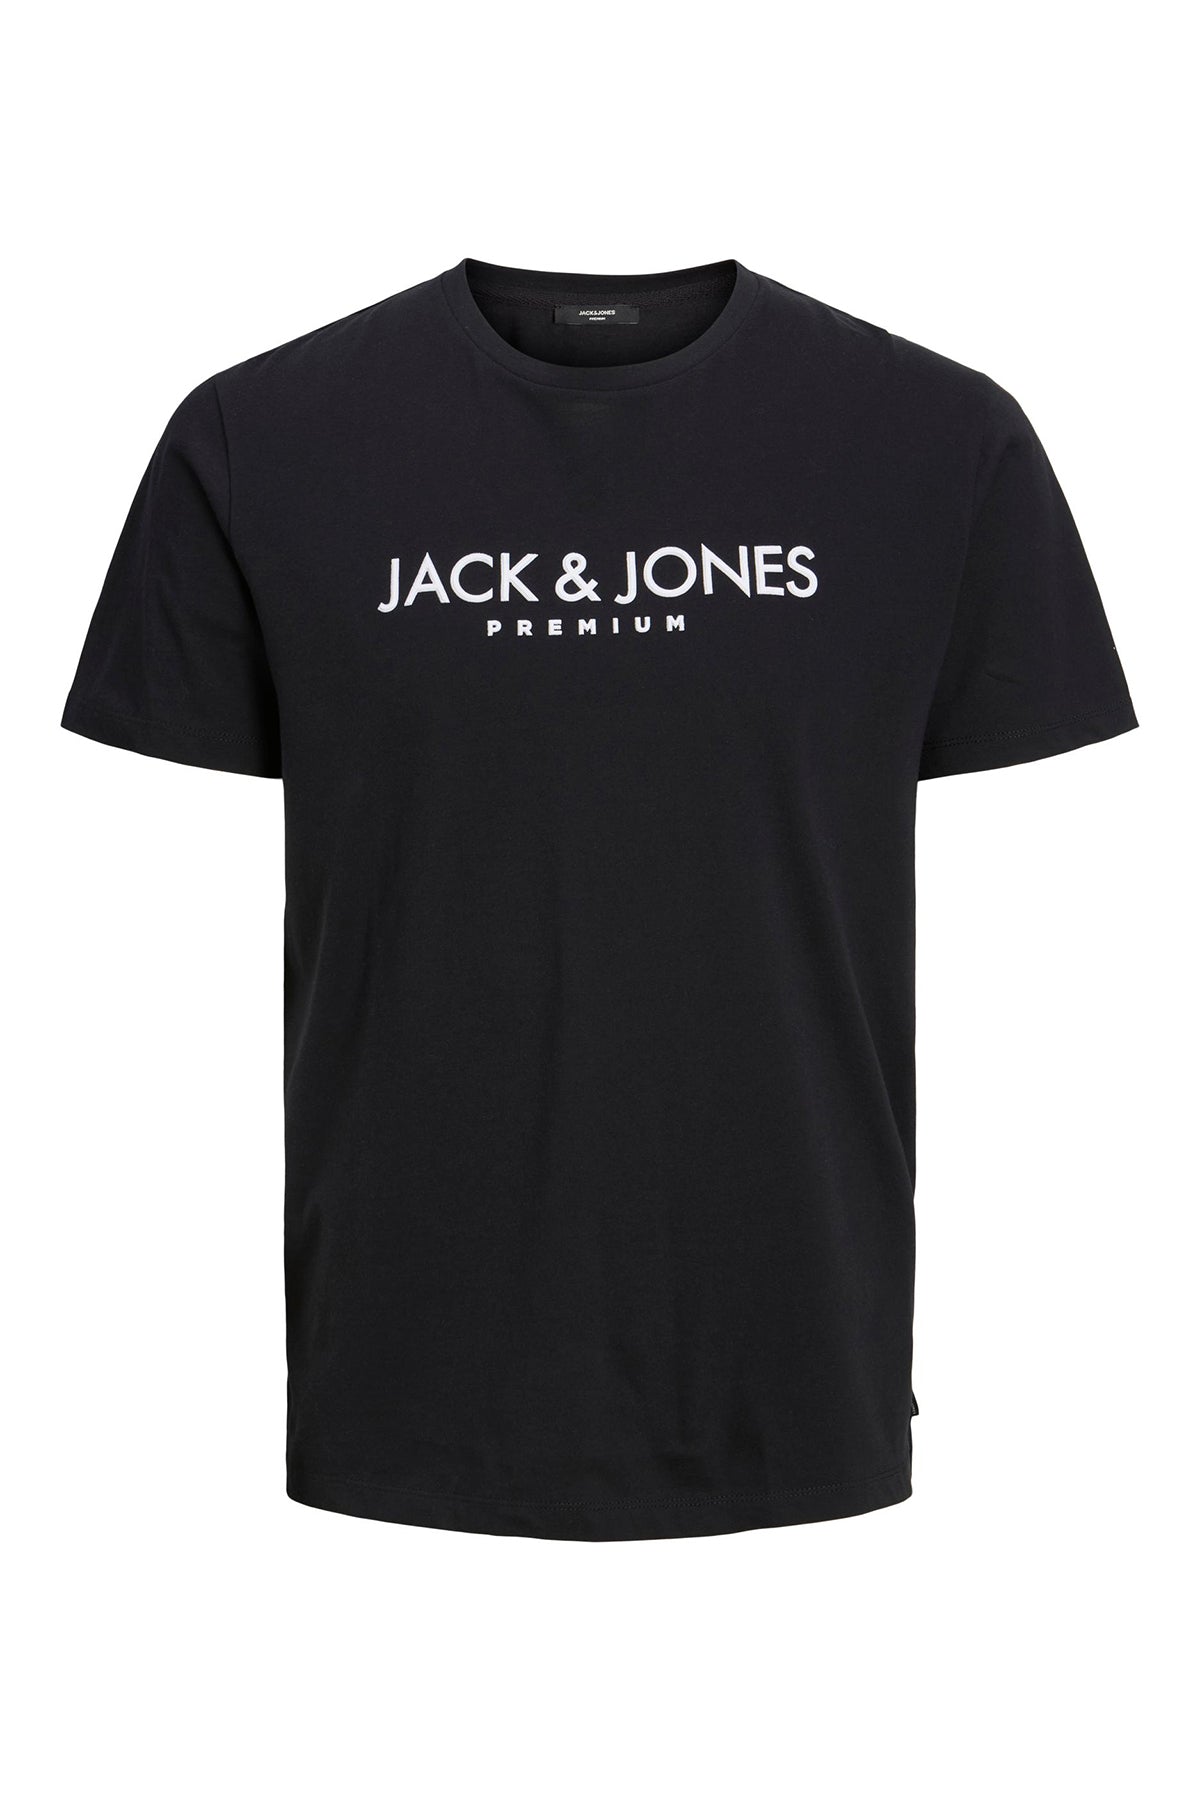 Jack & Jones Premium Pamuklu Regular Fit Bisiklet Yaka Erkek T Shirt 12227649 SİYAH